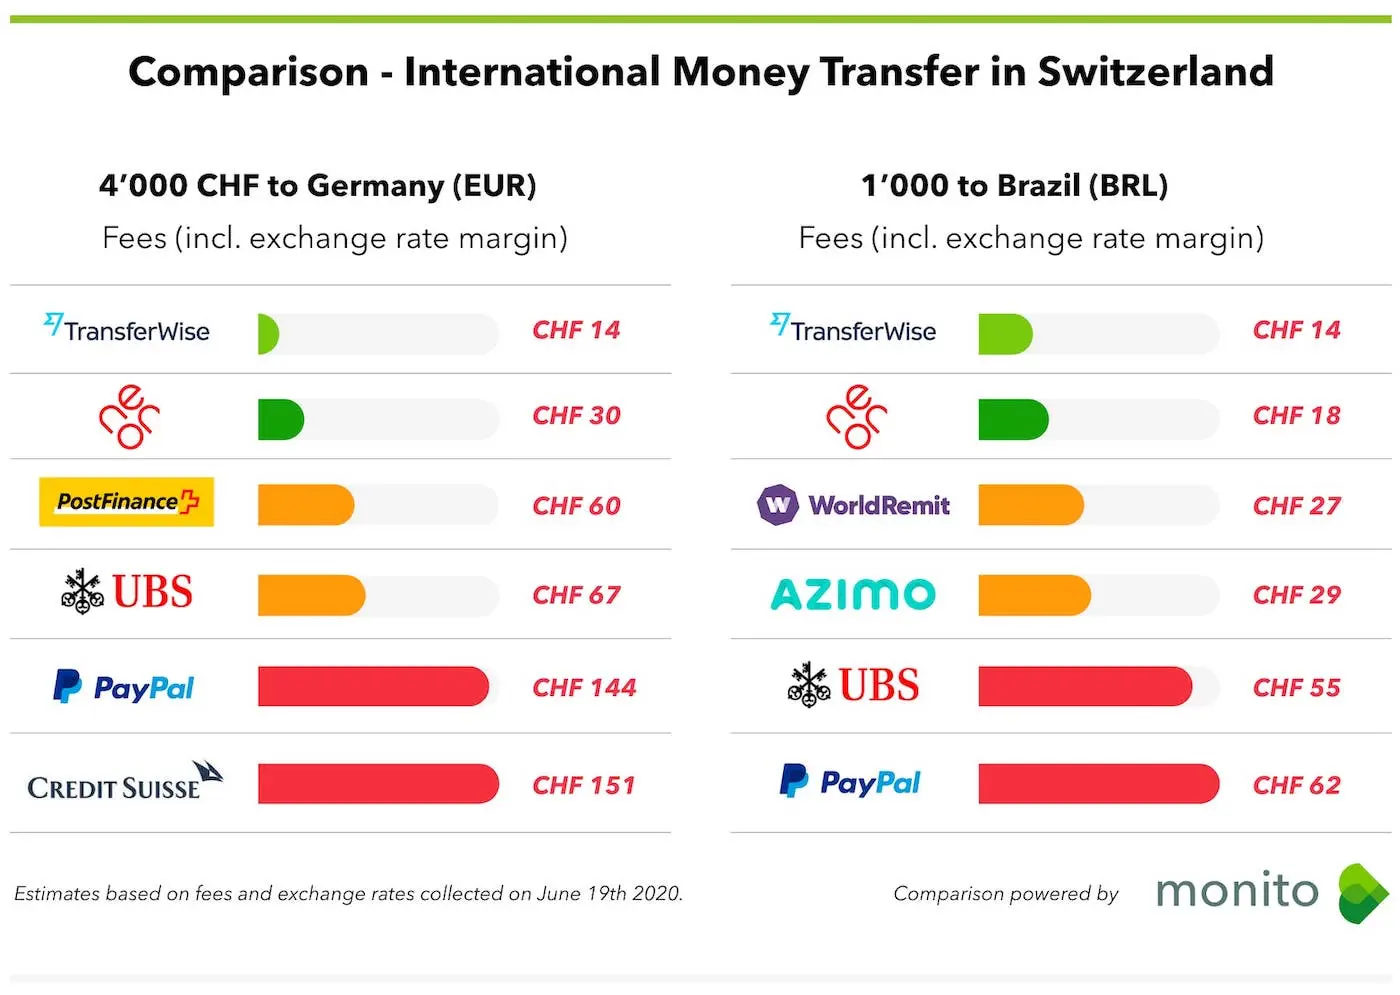 Vergleich der Gebühren der Bank neon und ihrer Alternativen für den internationalen Geldtransfer in der Schweiz